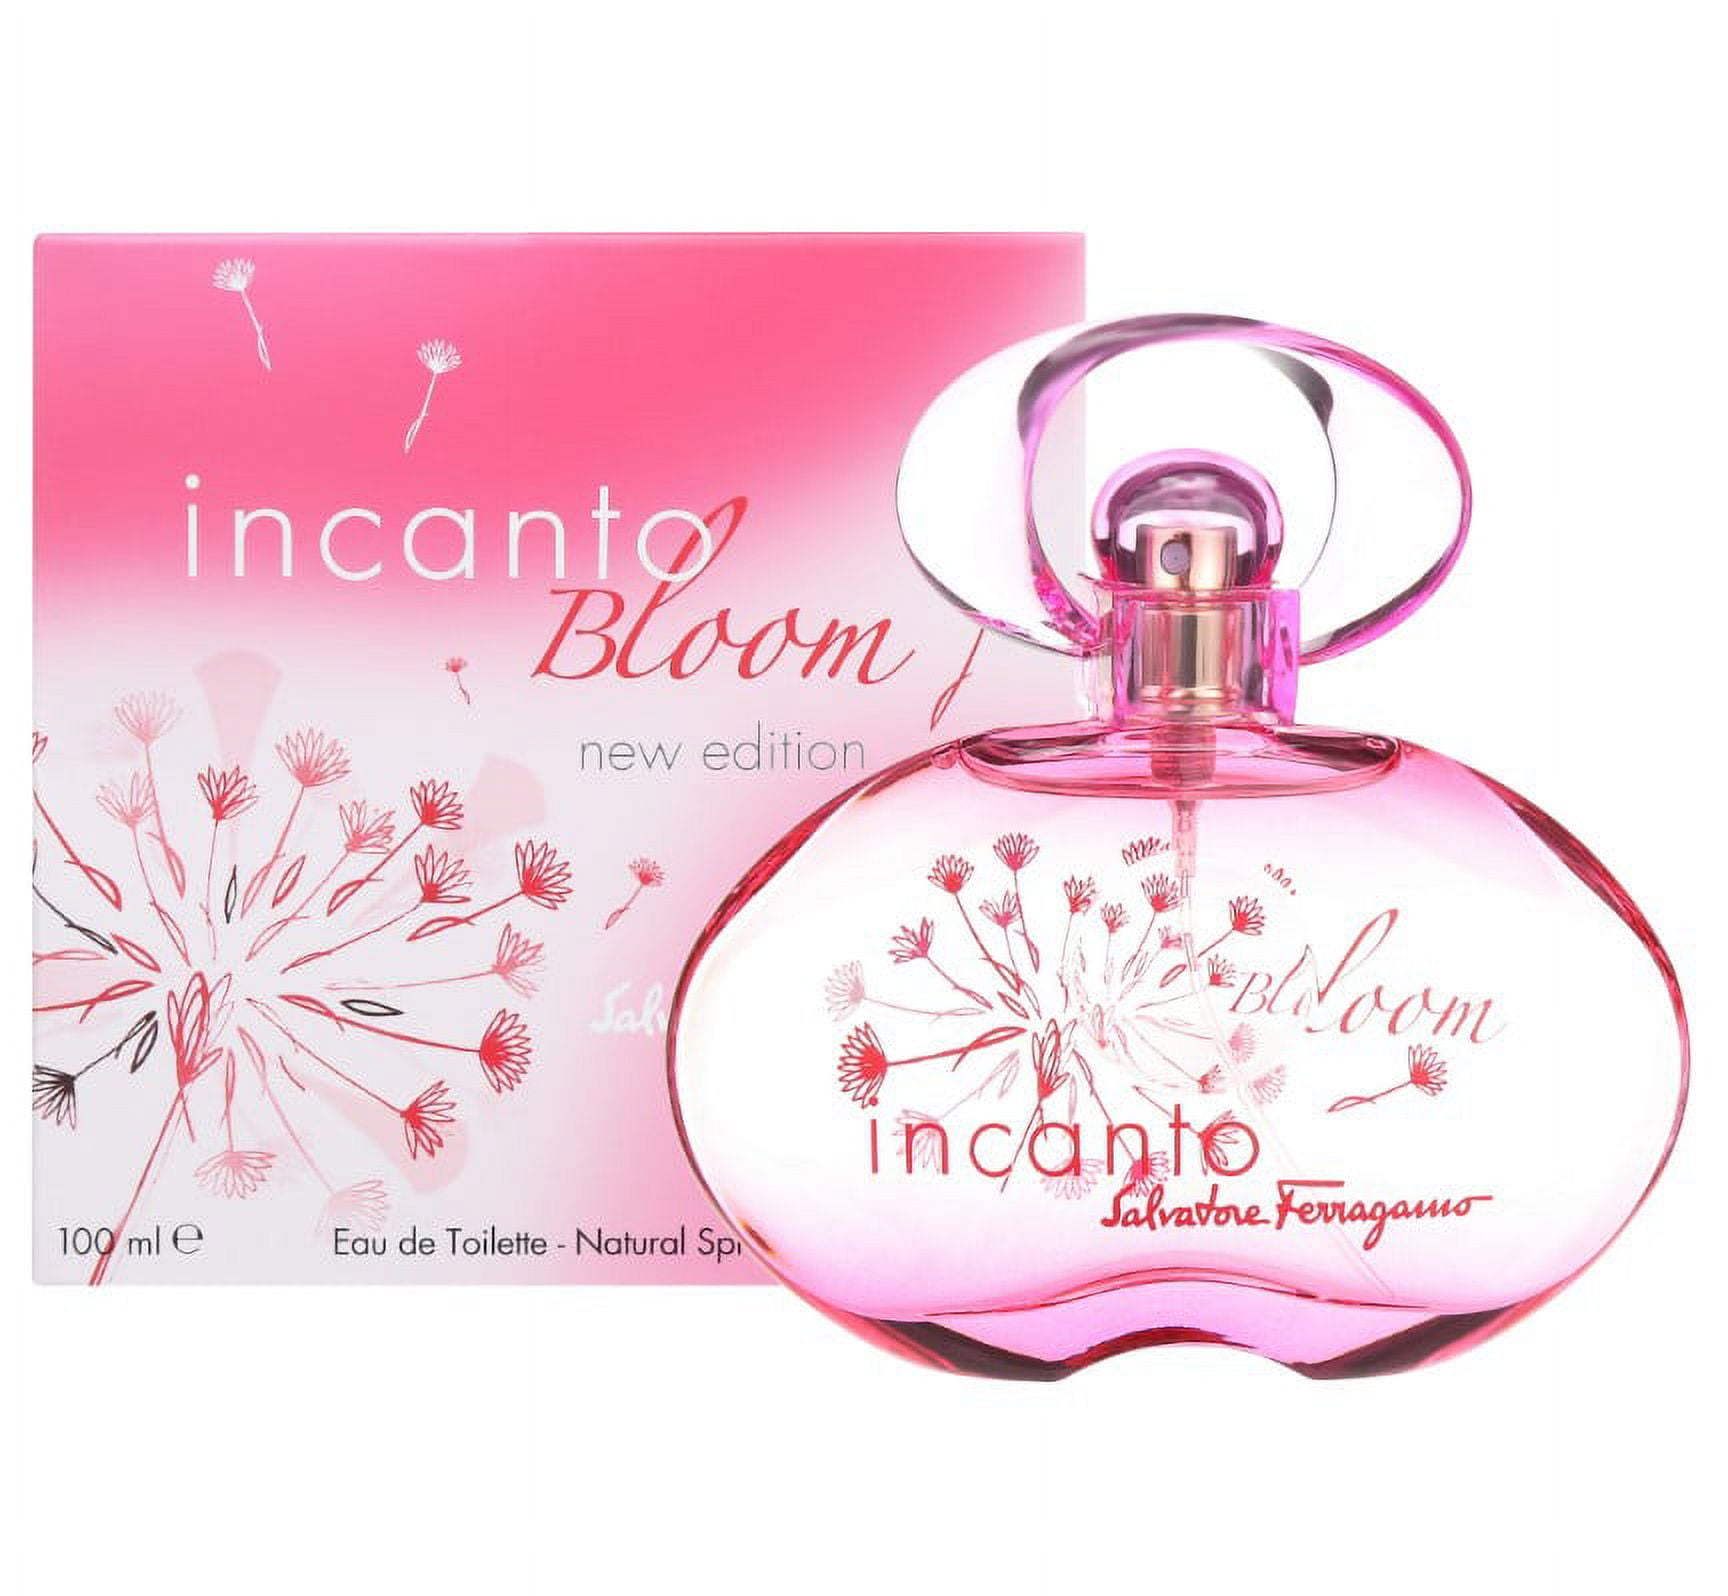  Salvatore Ferragamo AMO MINI Perfume Women Spray MINI Perfume  Travel size/Small - 0.17 fl.oz / 5 ml : Beauty & Personal Care